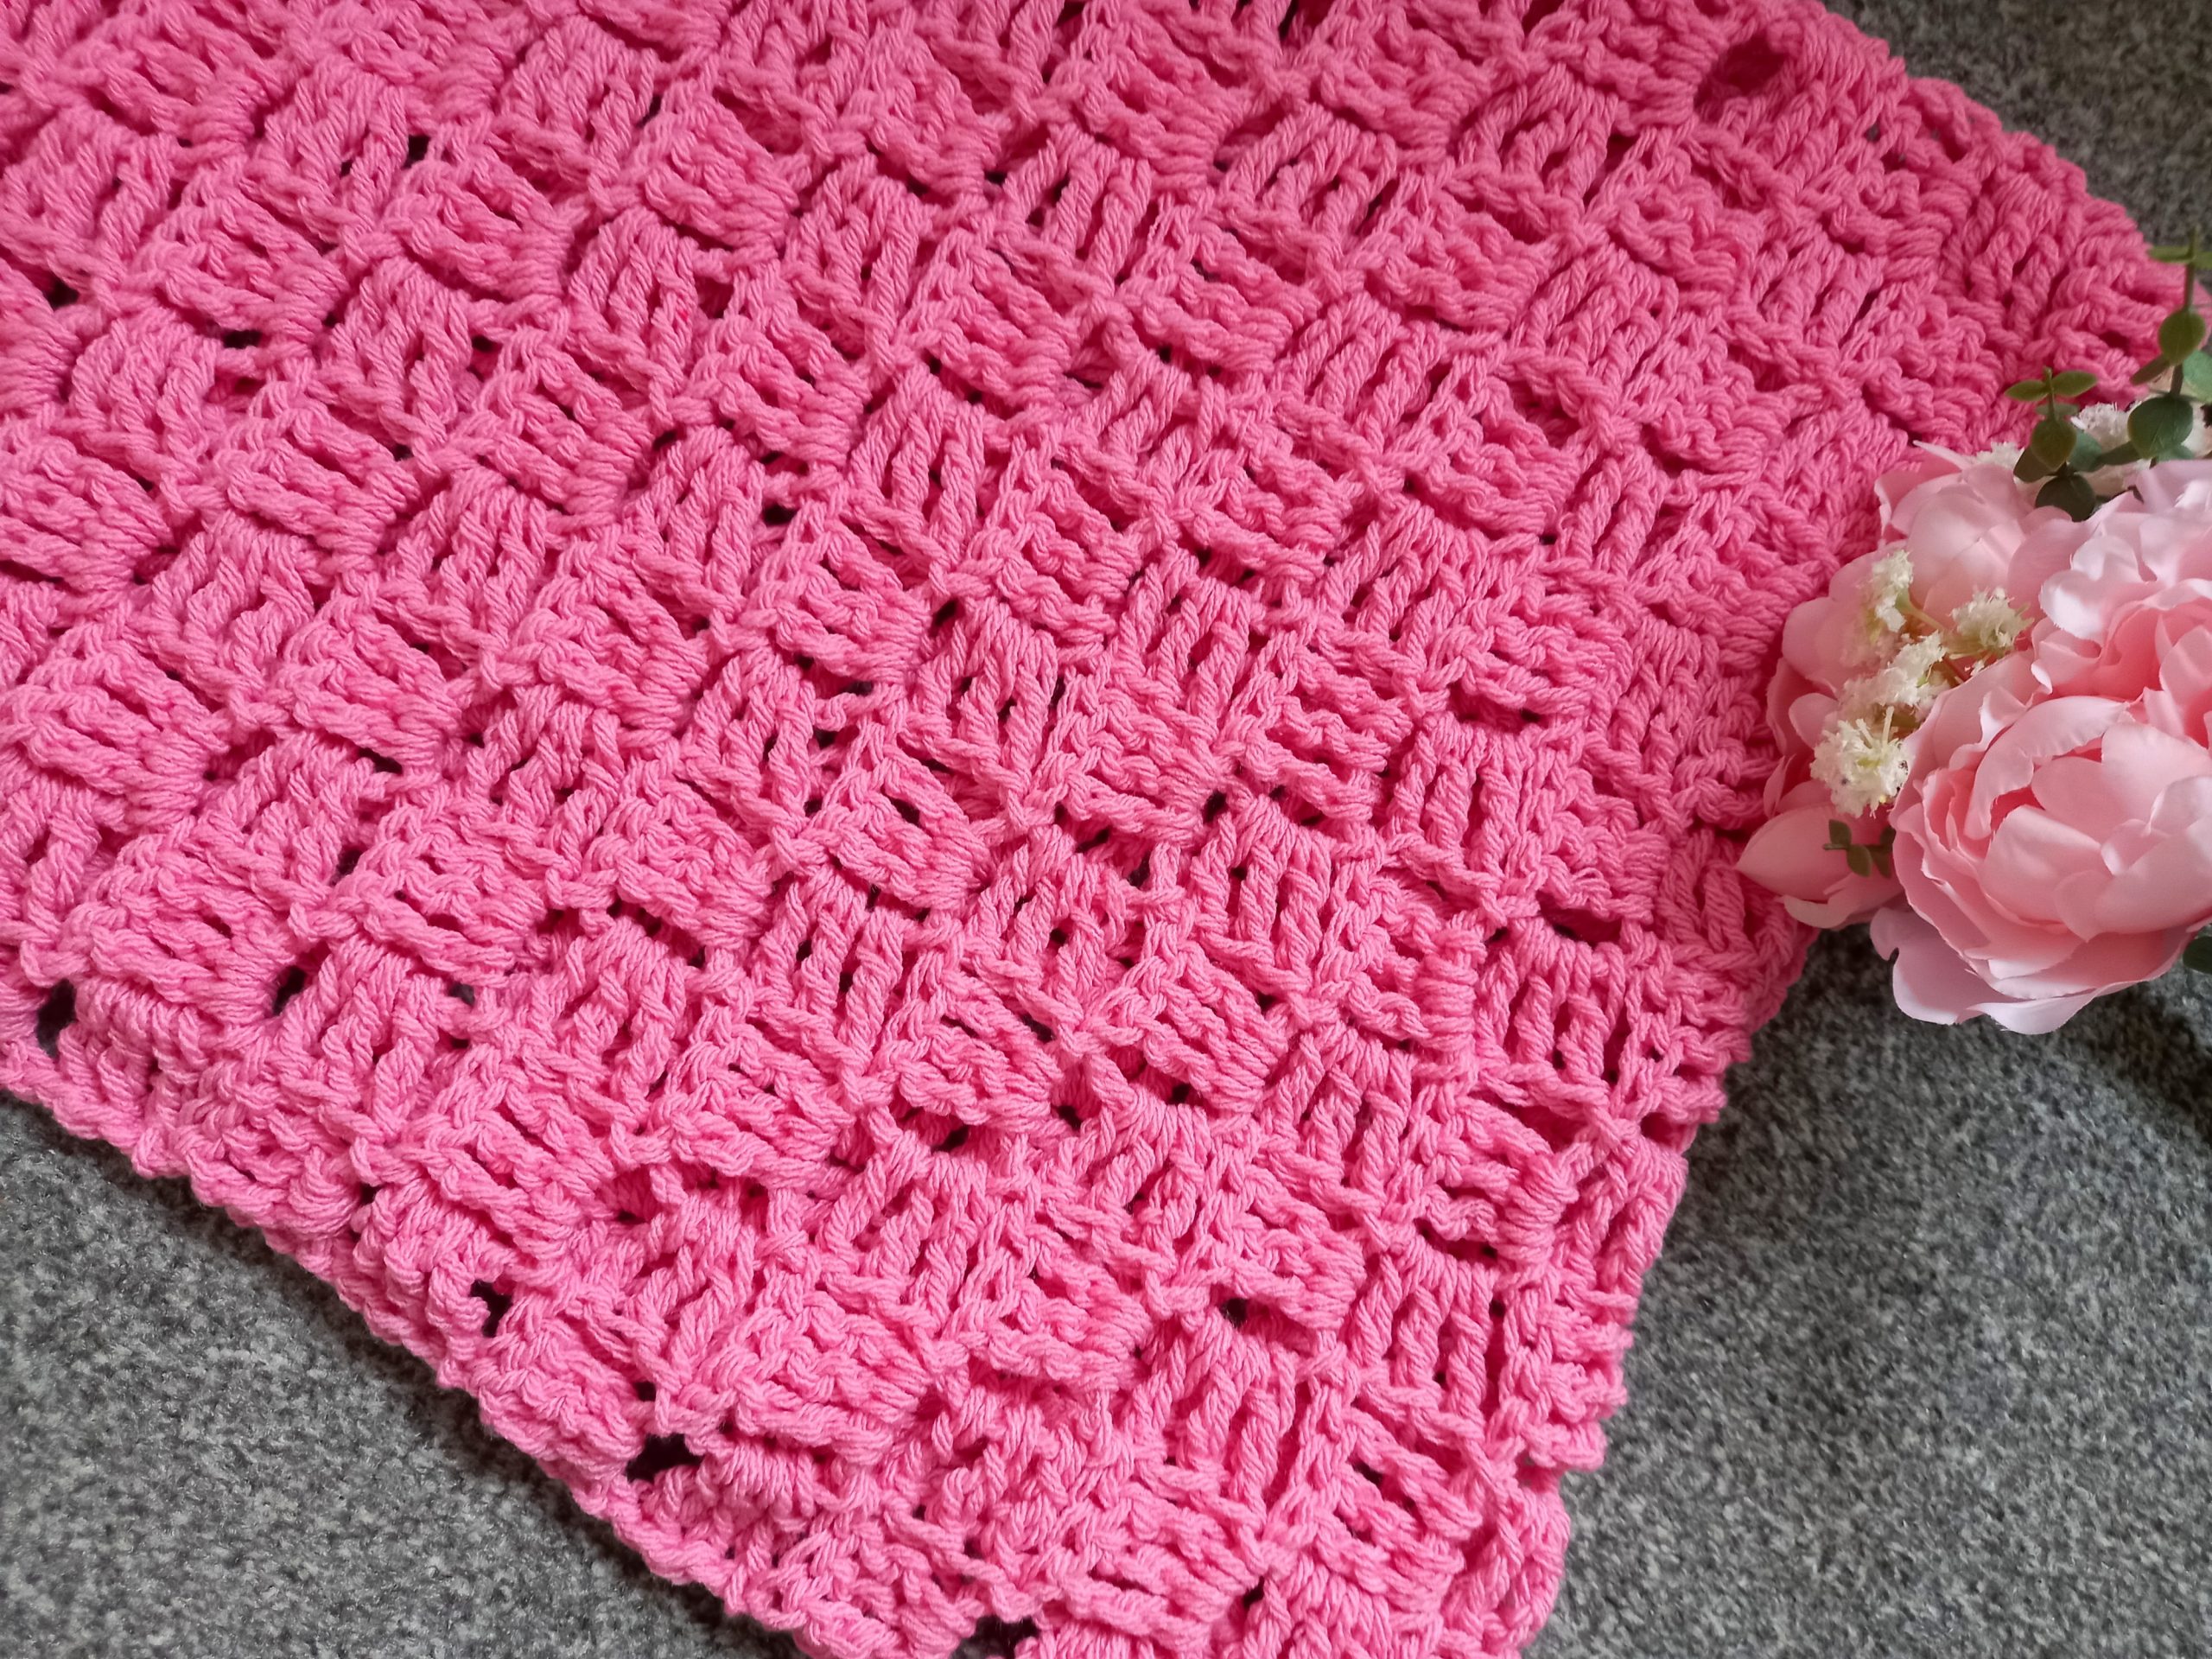 Crochet The Lovely Pink Shrug